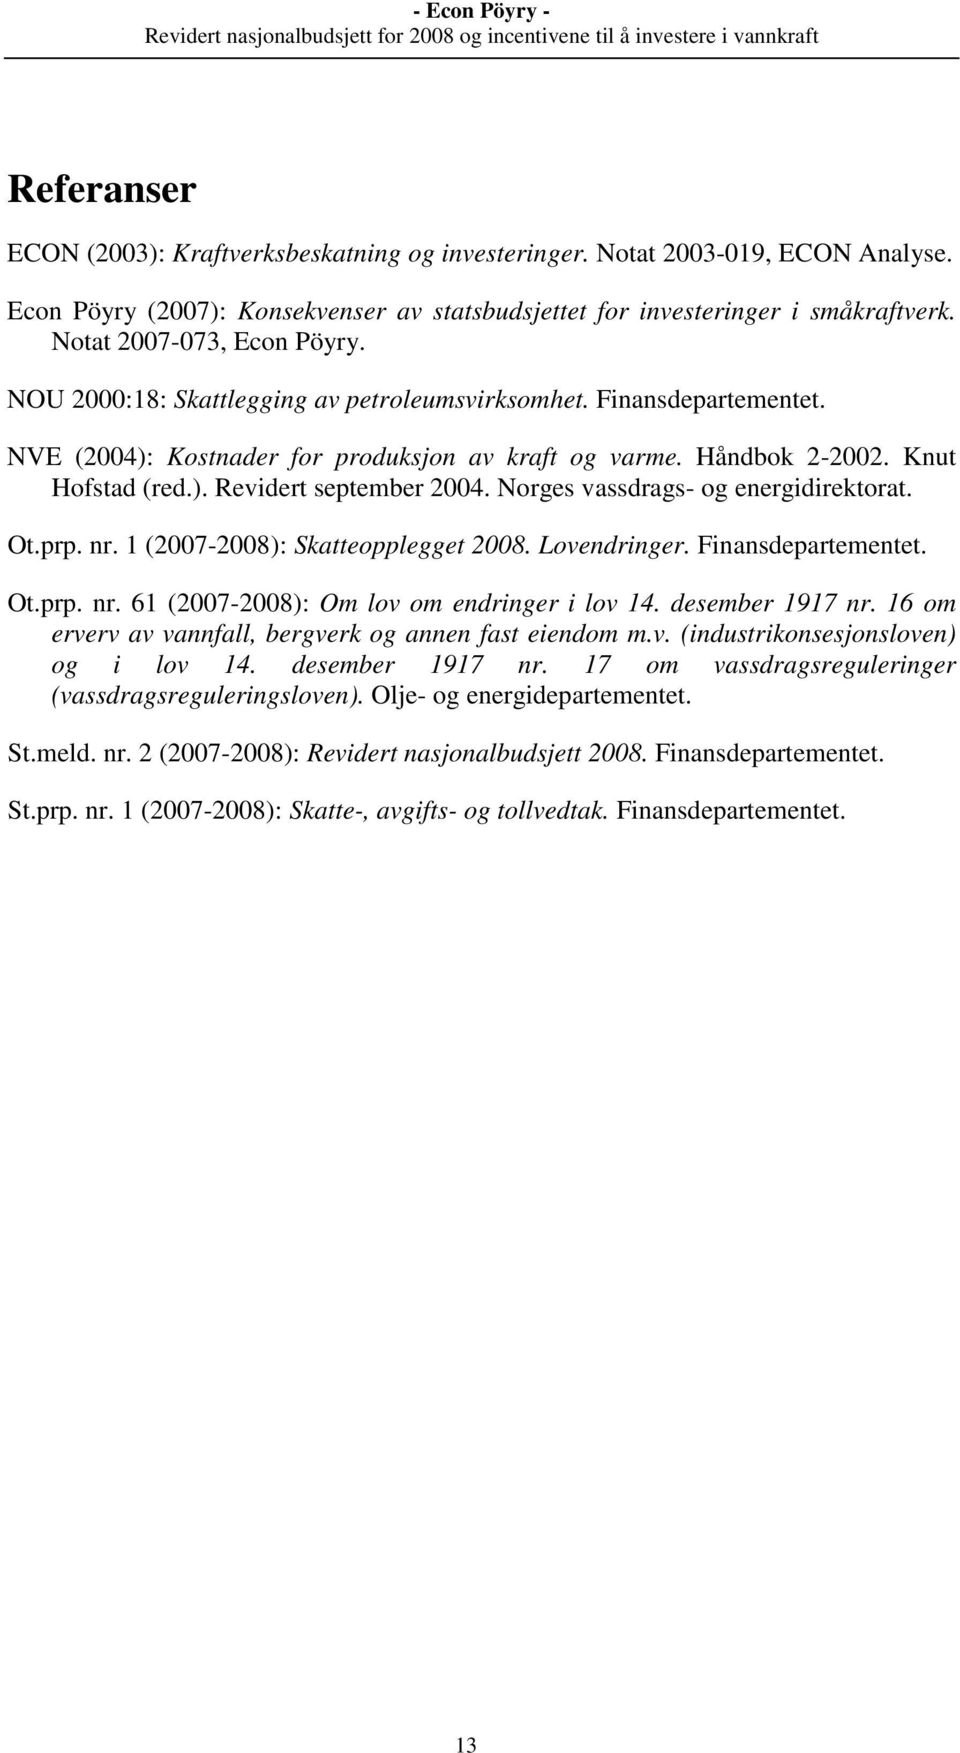 Norges vassdrags- og energidirektorat. Ot.prp. nr. 1 (2007-2008): Skatteopplegget 2008. Lovendringer. Finansdepartementet. Ot.prp. nr. 61 (2007-2008): Om lov om endringer i lov 14. desember 1917 nr.